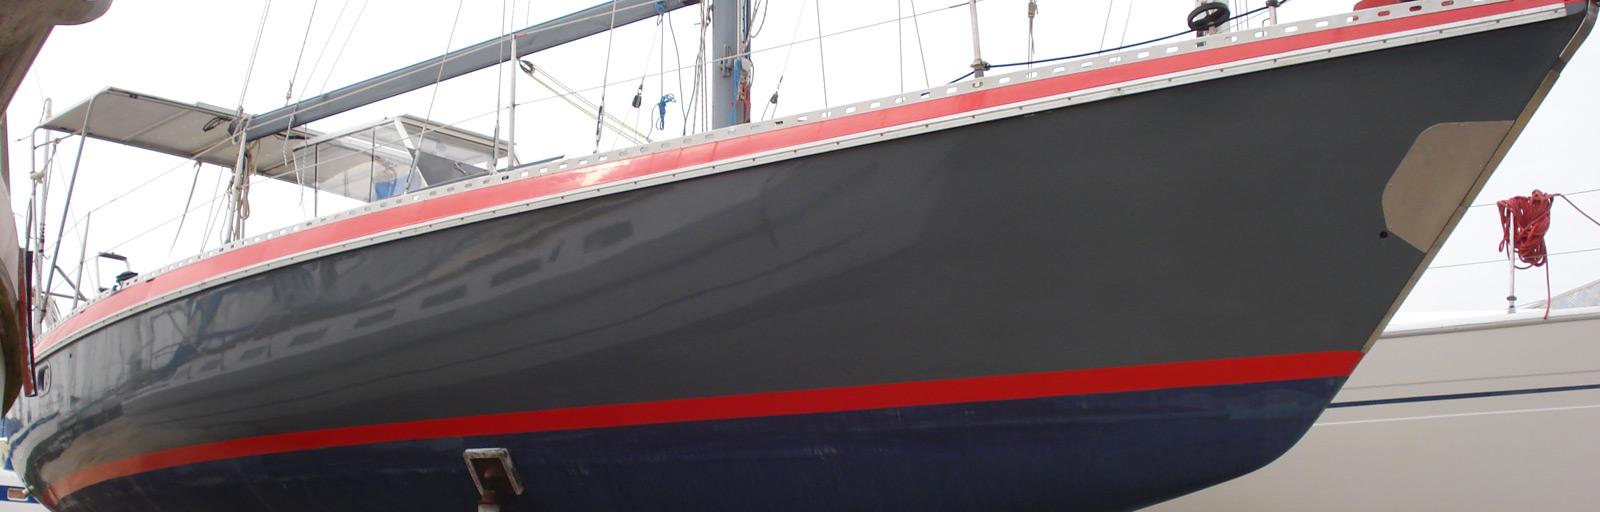 gib sea yachts history